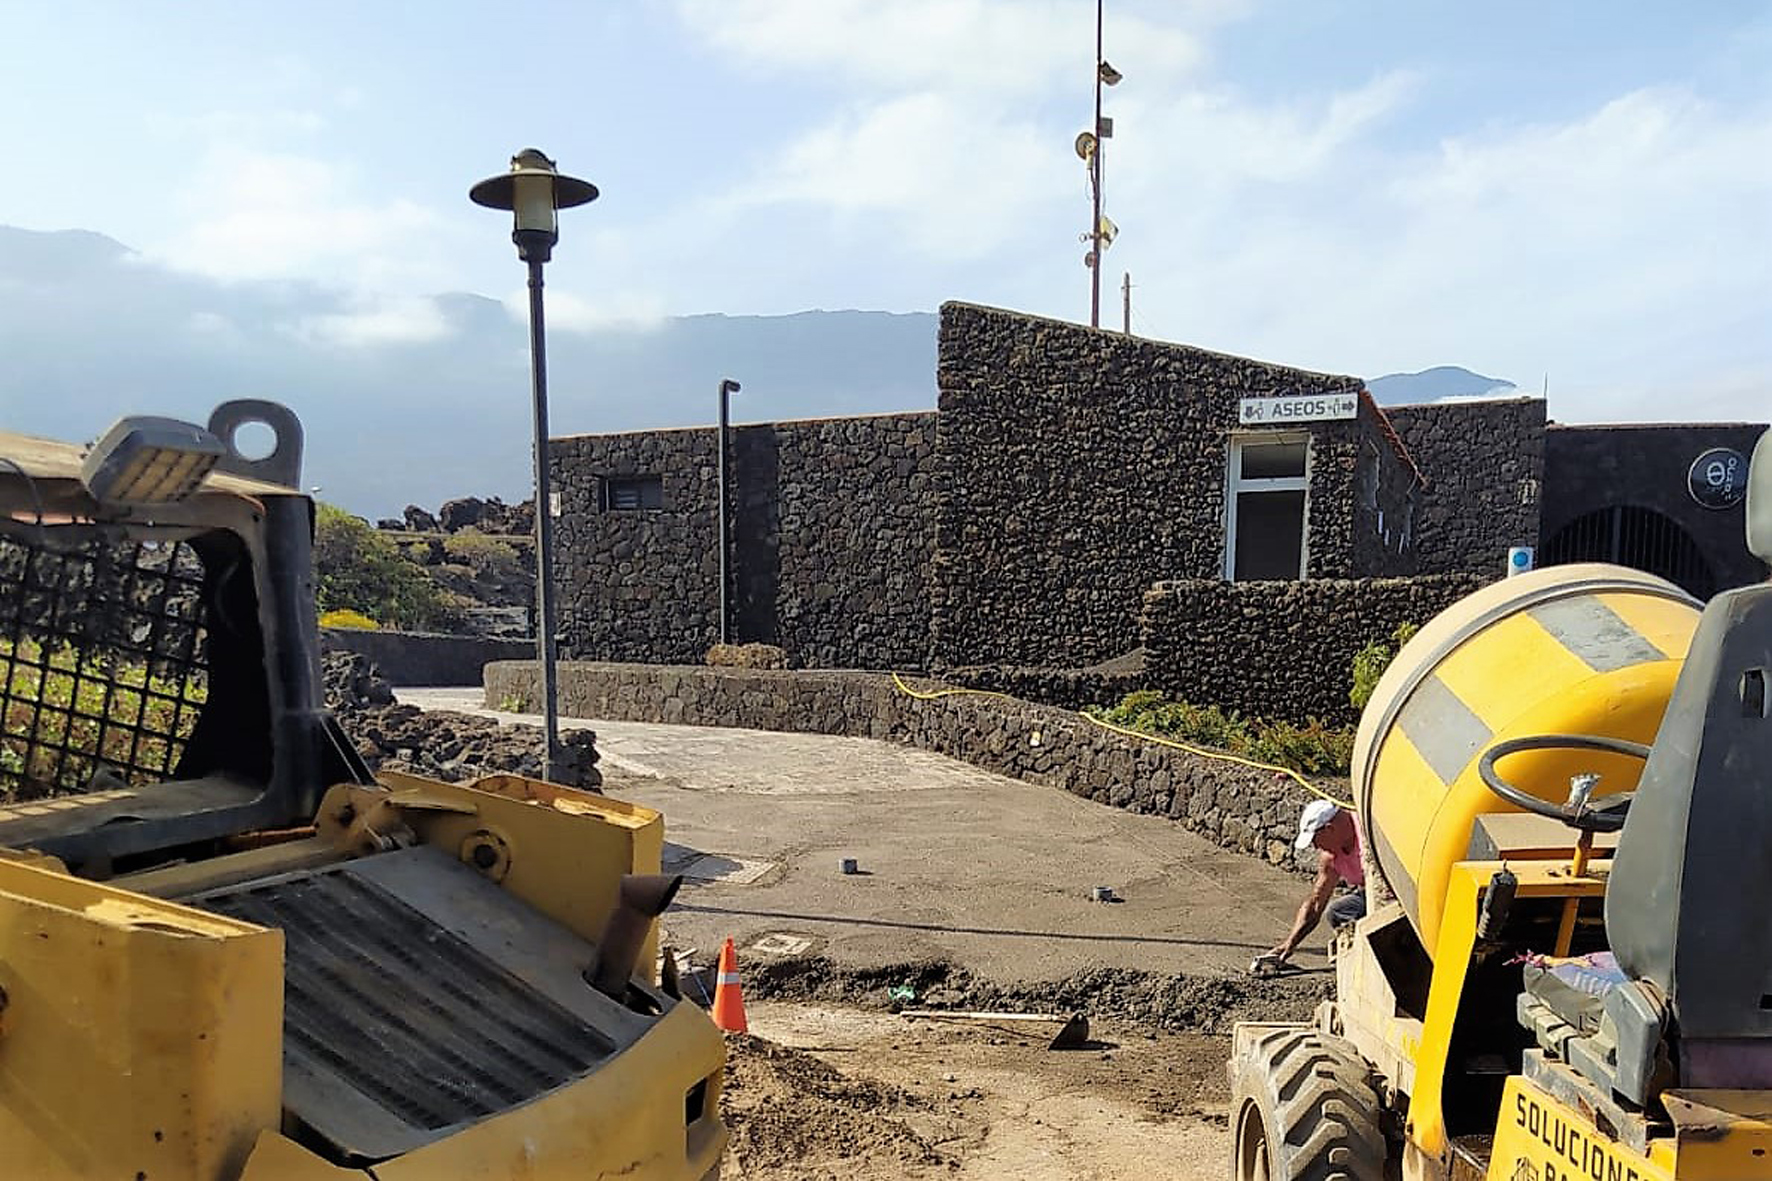 La Frontera realiza obras de mejora del acceso al área de servicio de autocaravanas de La Maceta